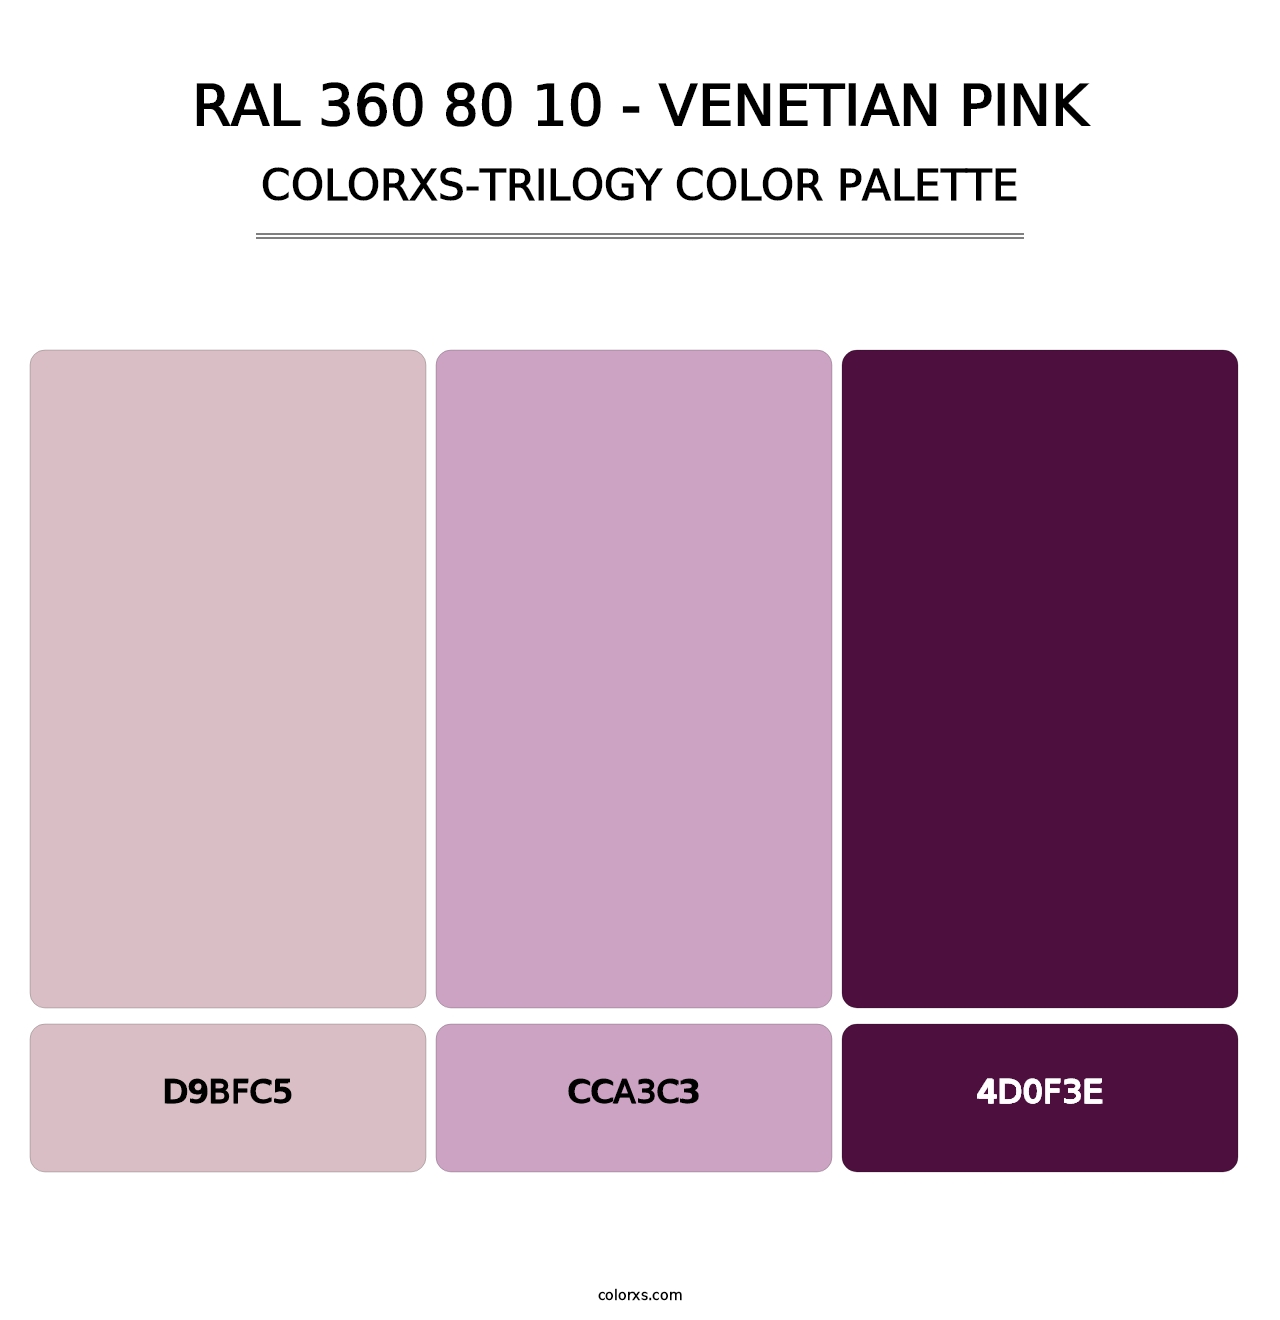 RAL 360 80 10 - Venetian Pink - Colorxs Trilogy Palette